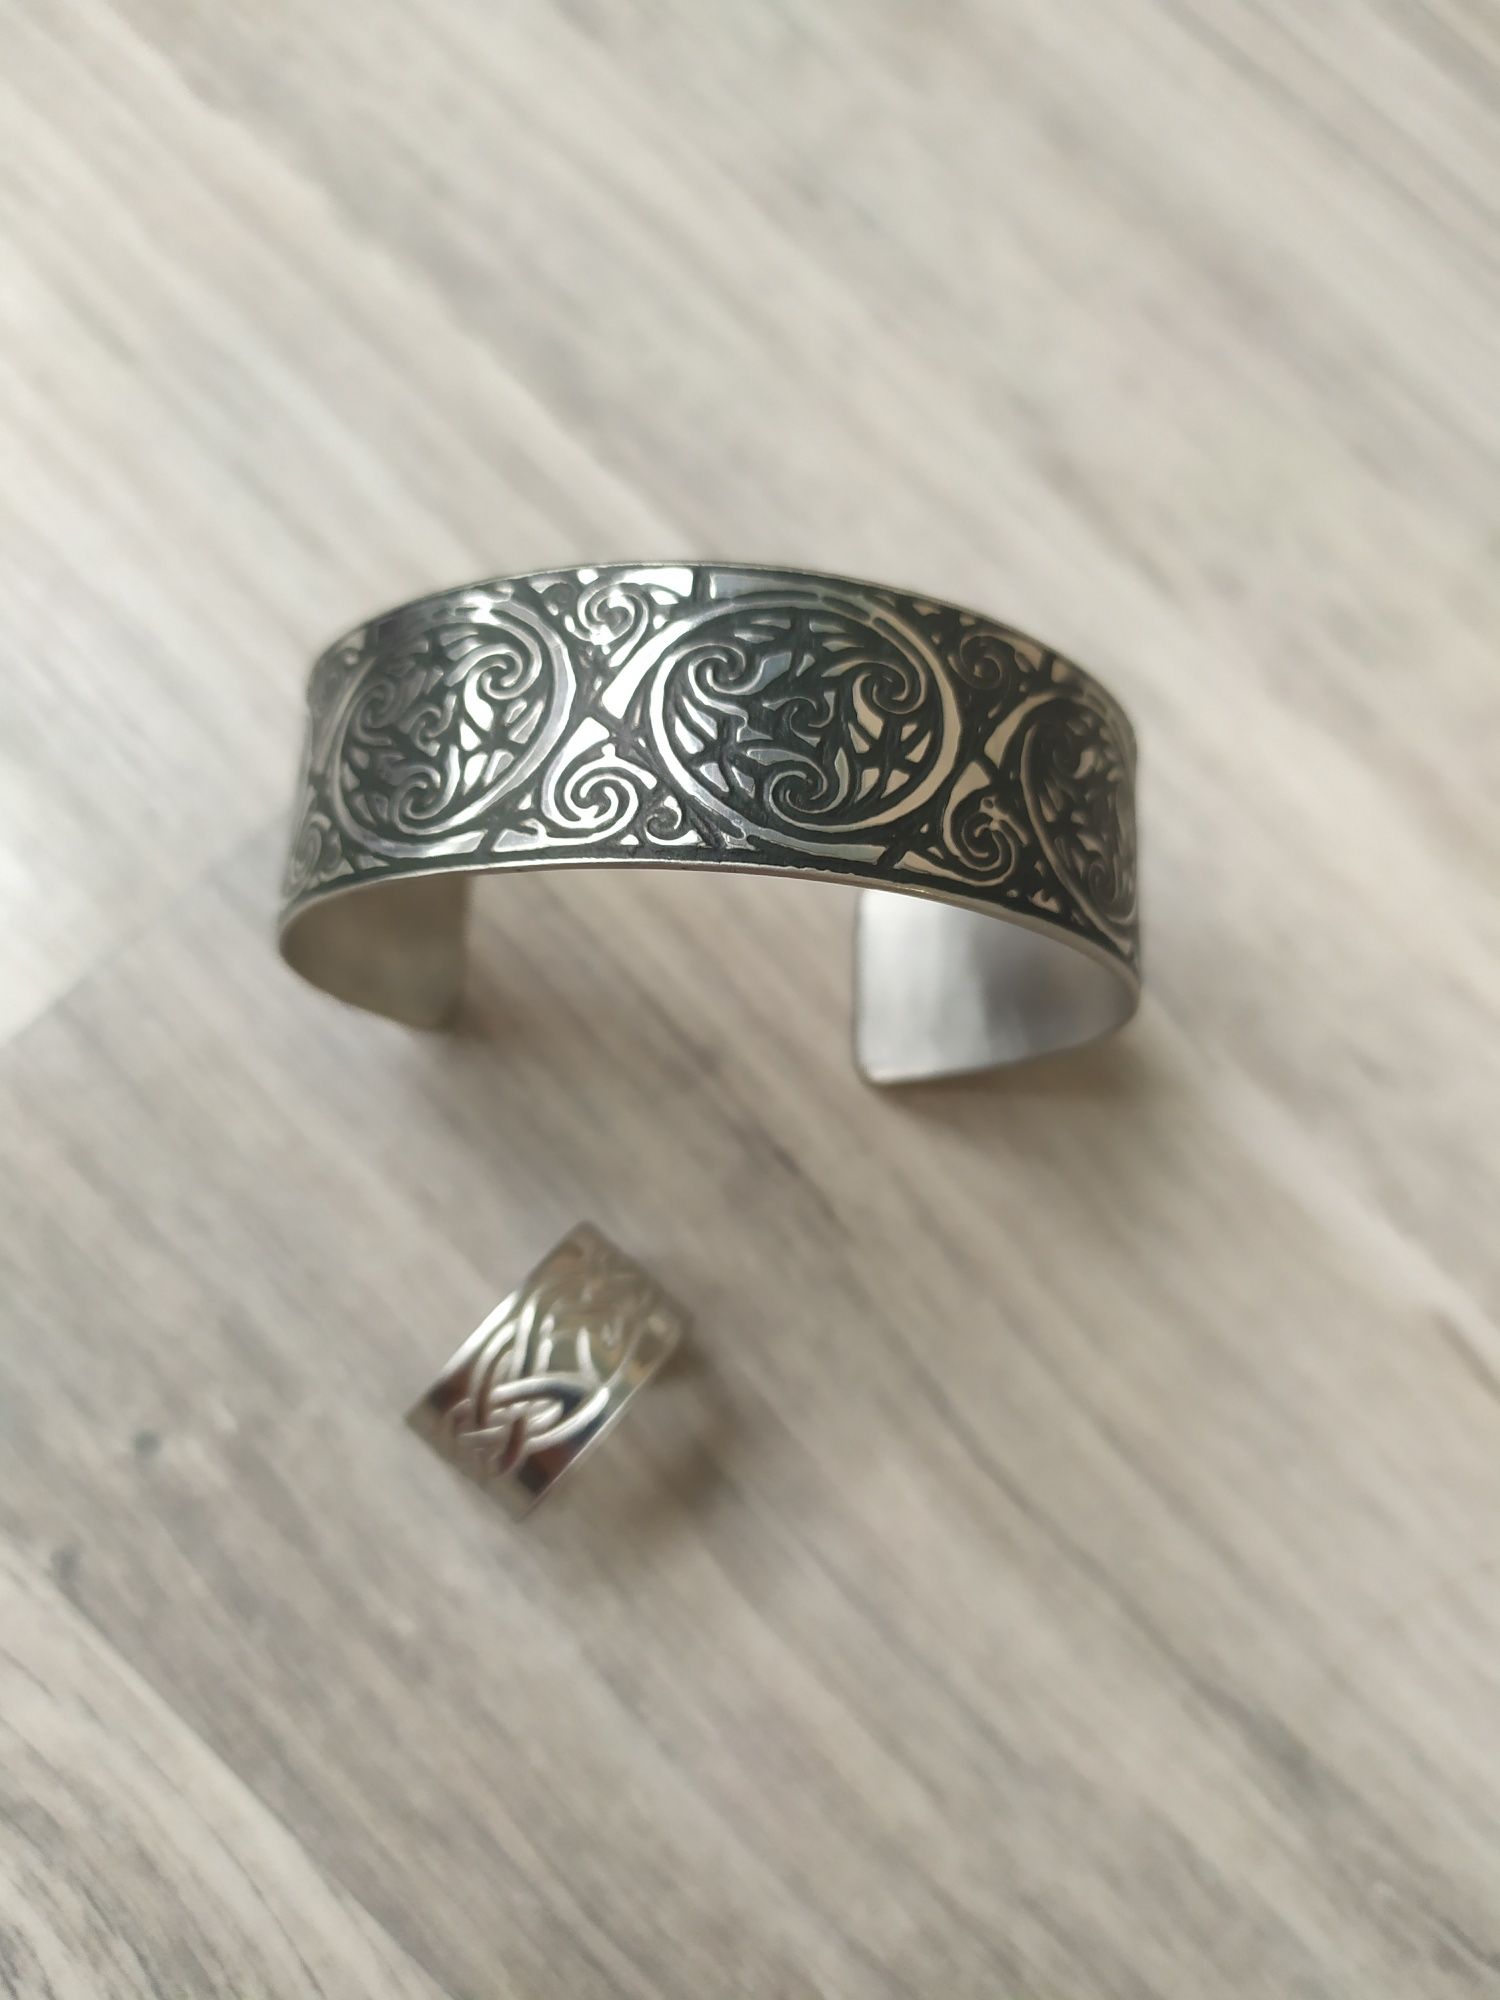 Браслет и кольцо, украшения, кельтика, геральдика